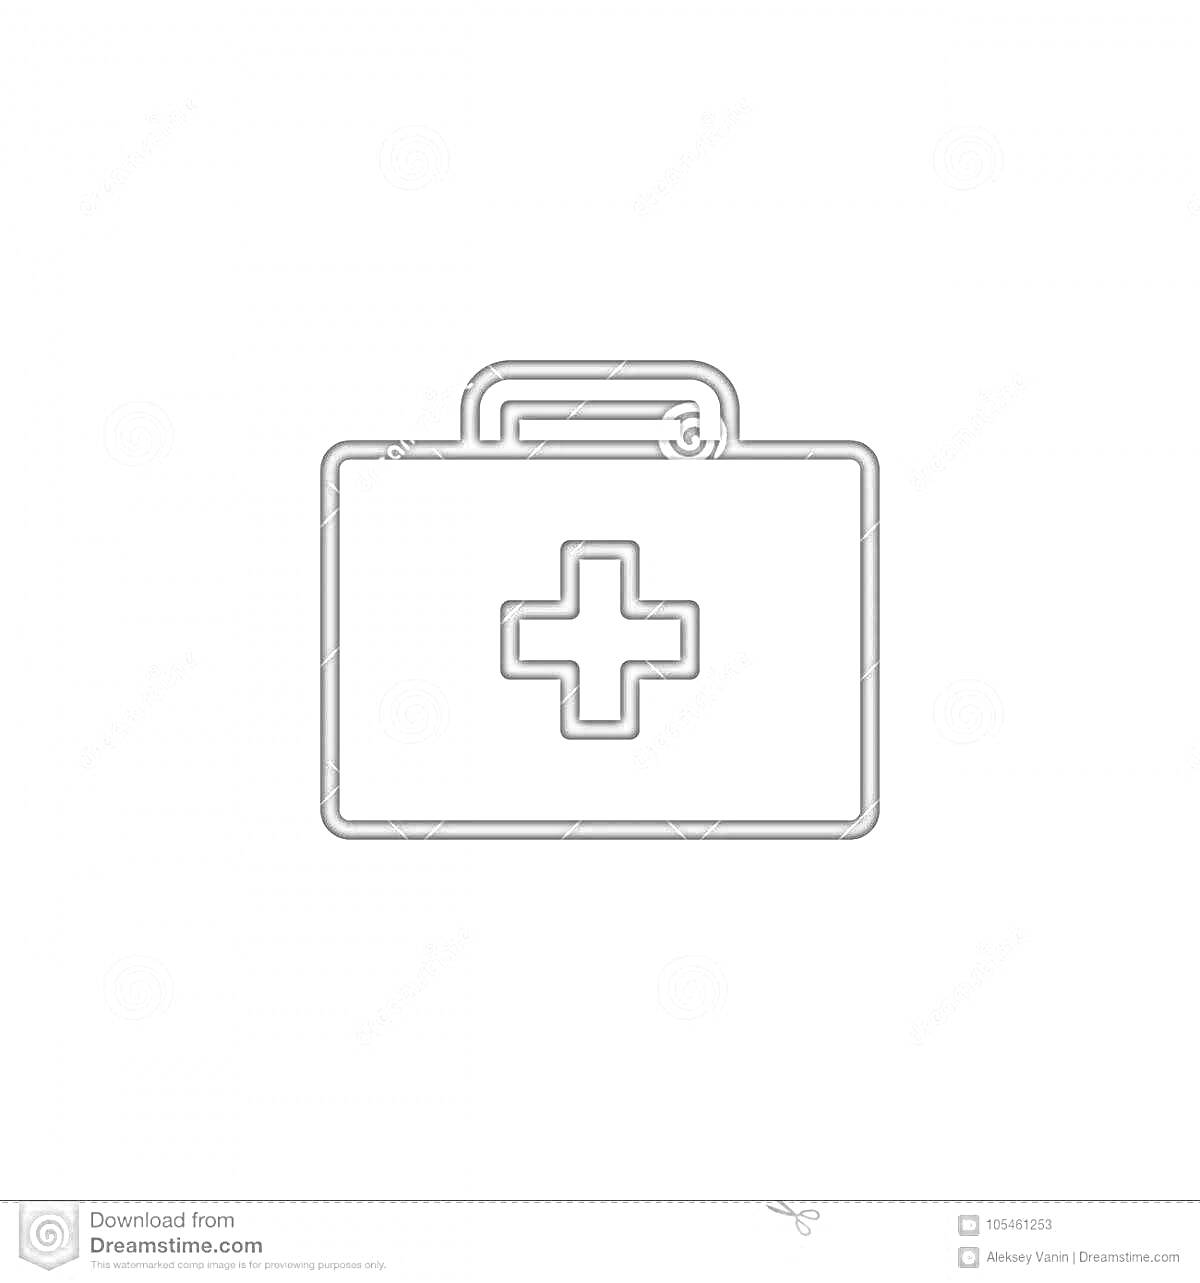 На раскраске изображено: Медицинский крест, Аптека, Аптечка, Медицина, Здоровье, Лечение, Первая помощь